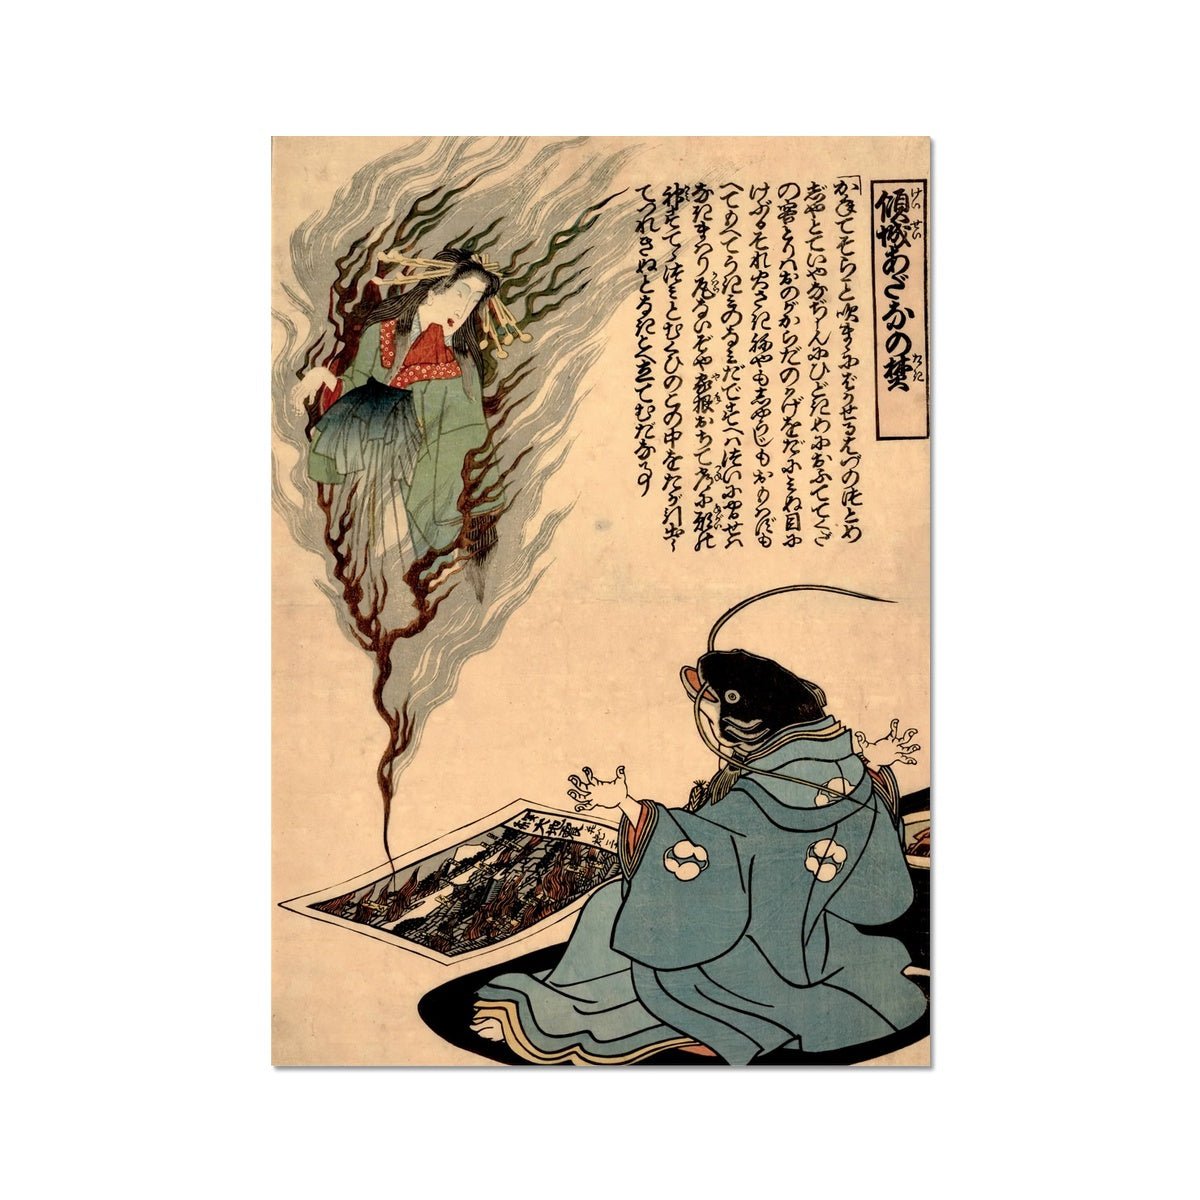 giclee The Namazu Yokai | Japanese Catfish Yokai Mythology Earthquake Deity | Namazu Catfish Vintage Woodblock Fine Art Print